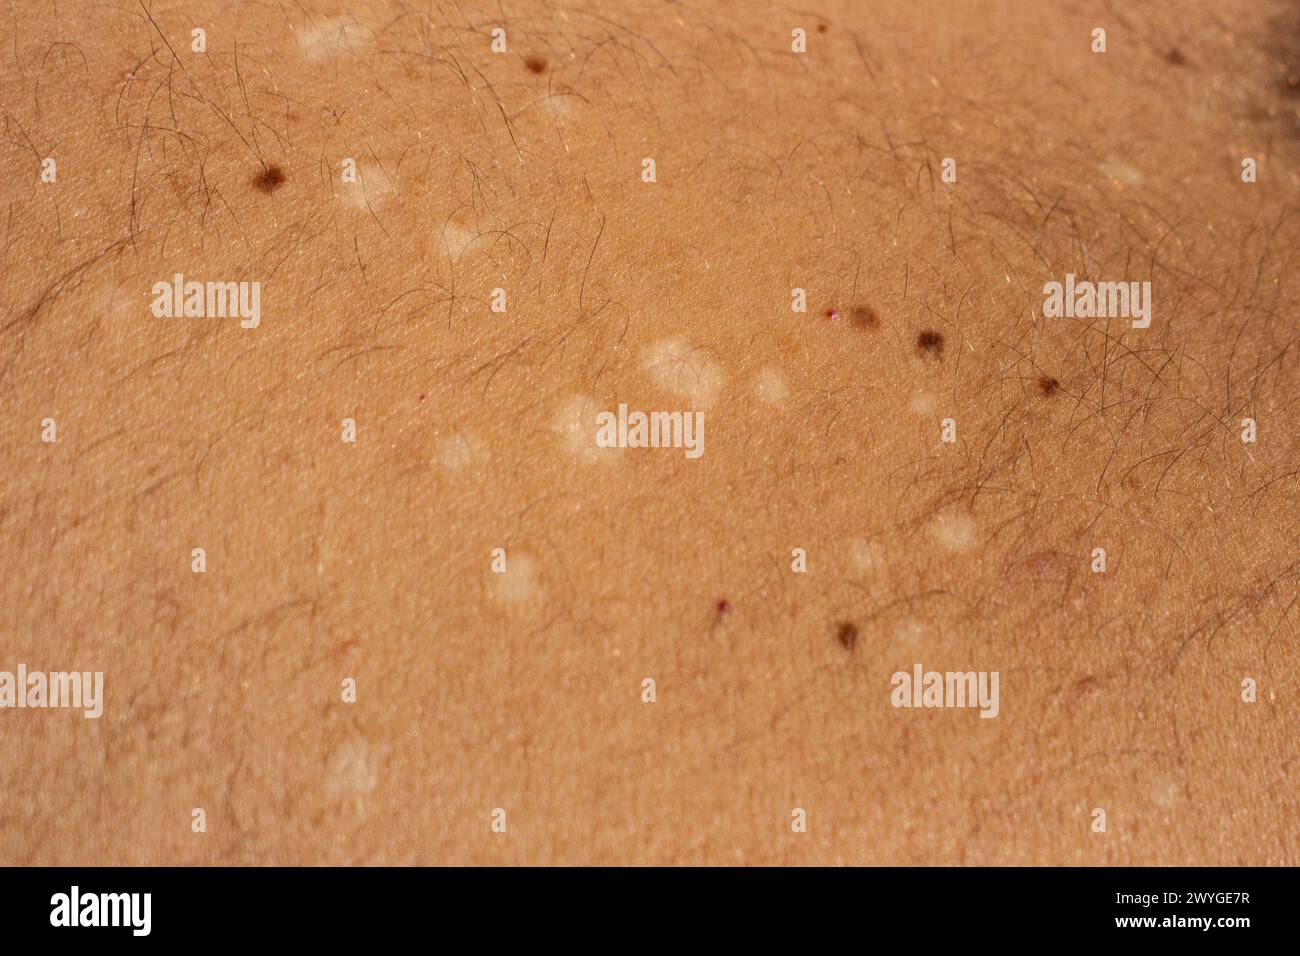 Cattura la complessità visiva della tinea versicolor, una comune infezione fungina della pelle, con questa immagine ad alta risoluzione Foto Stock